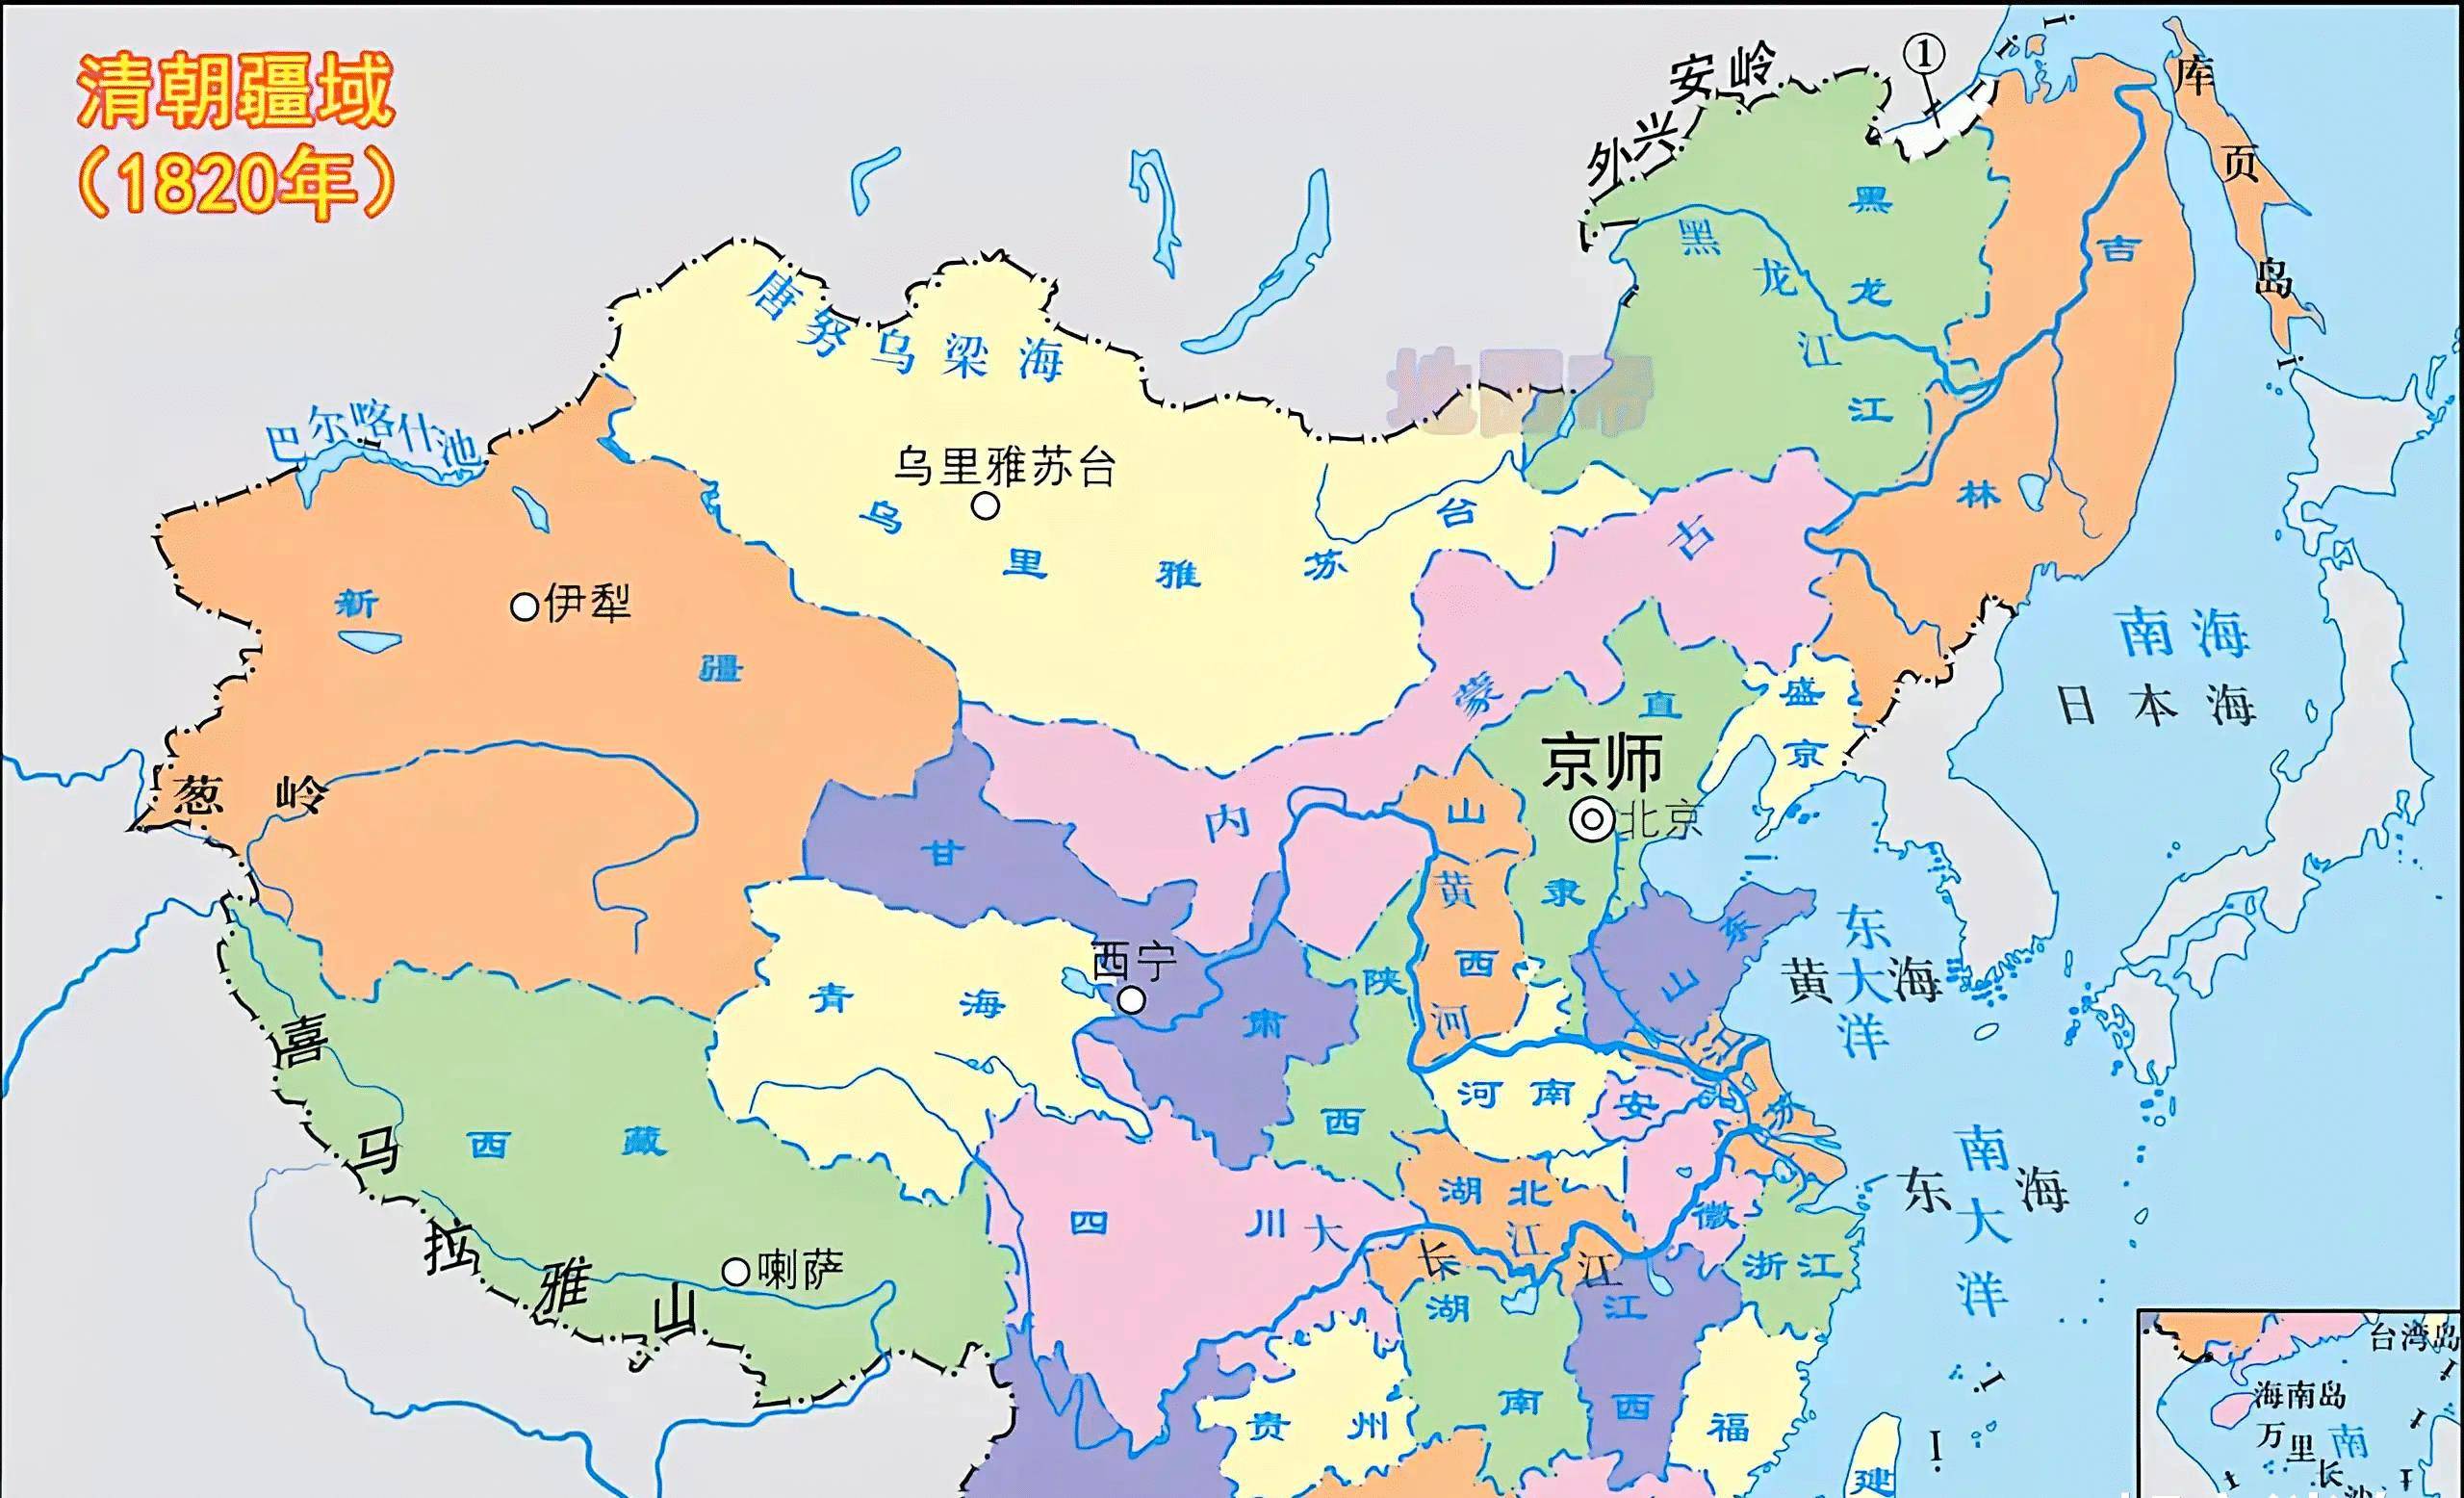 京津沪渝为何能成为仅有的四大直辖市？还有哪些城市有望直辖呢？